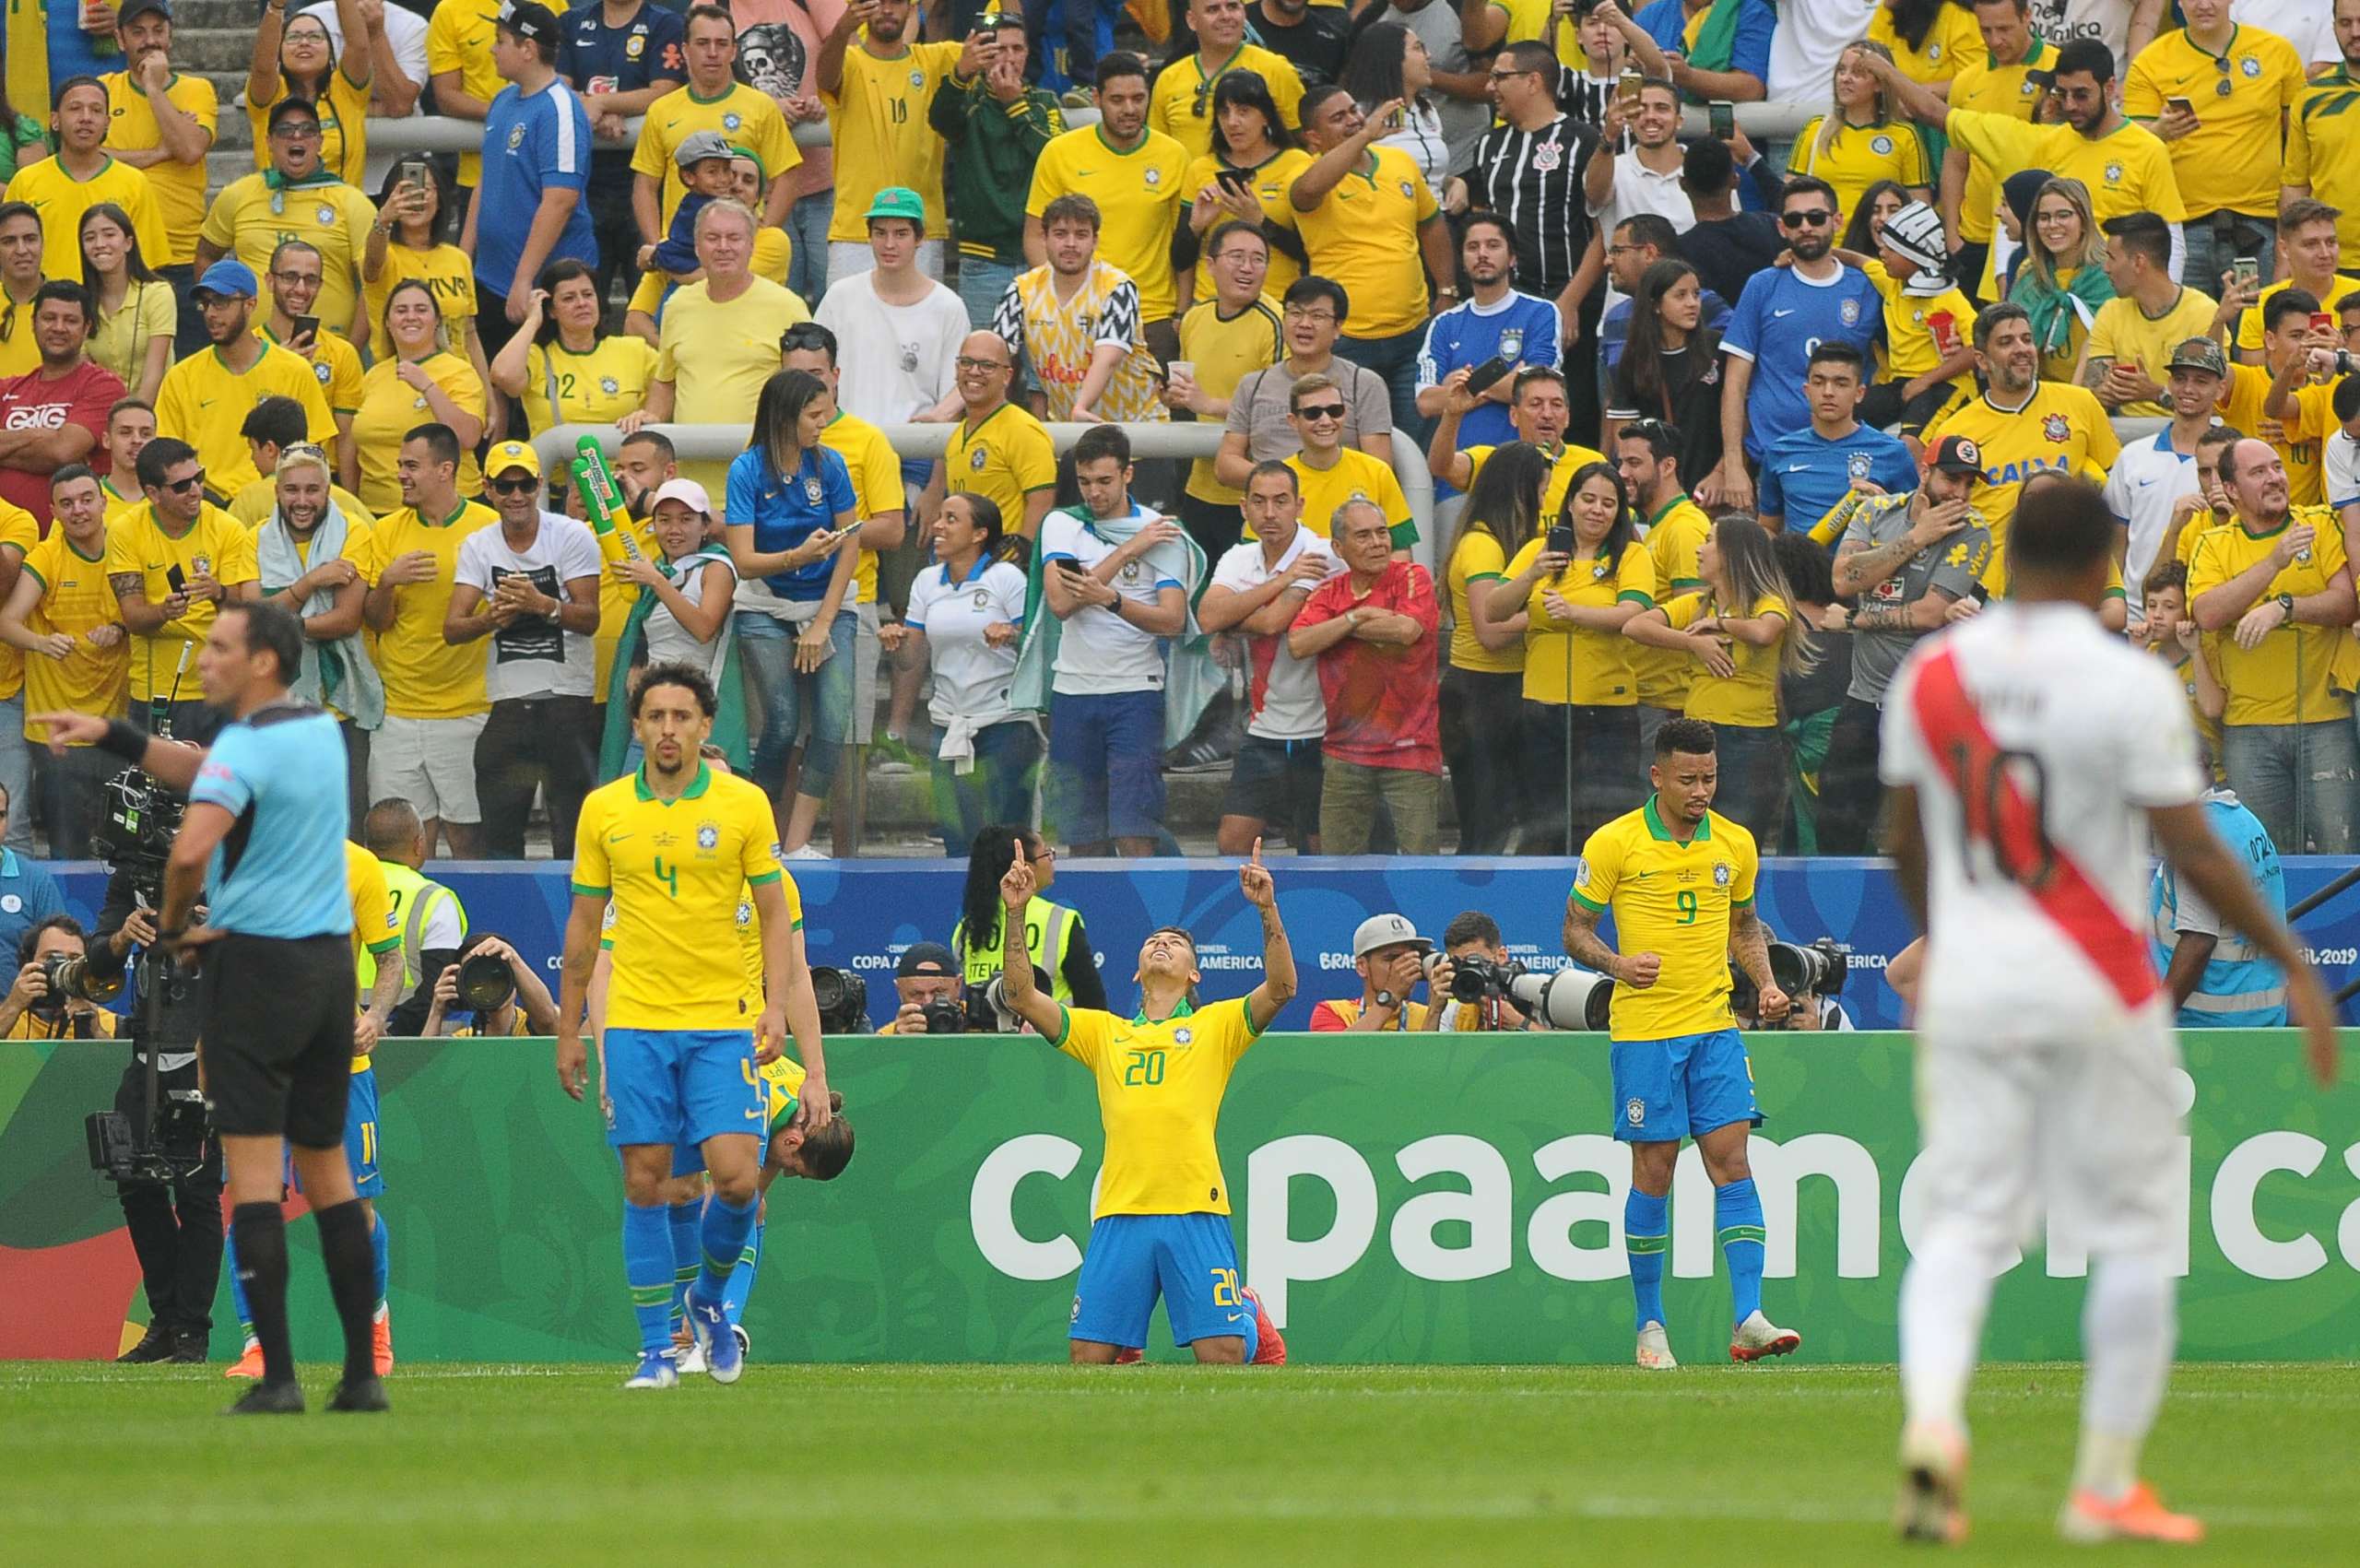 Cara virada, Cebolinha barrigudo e Peru caído. Veja as imagens da goleada da Seleção!